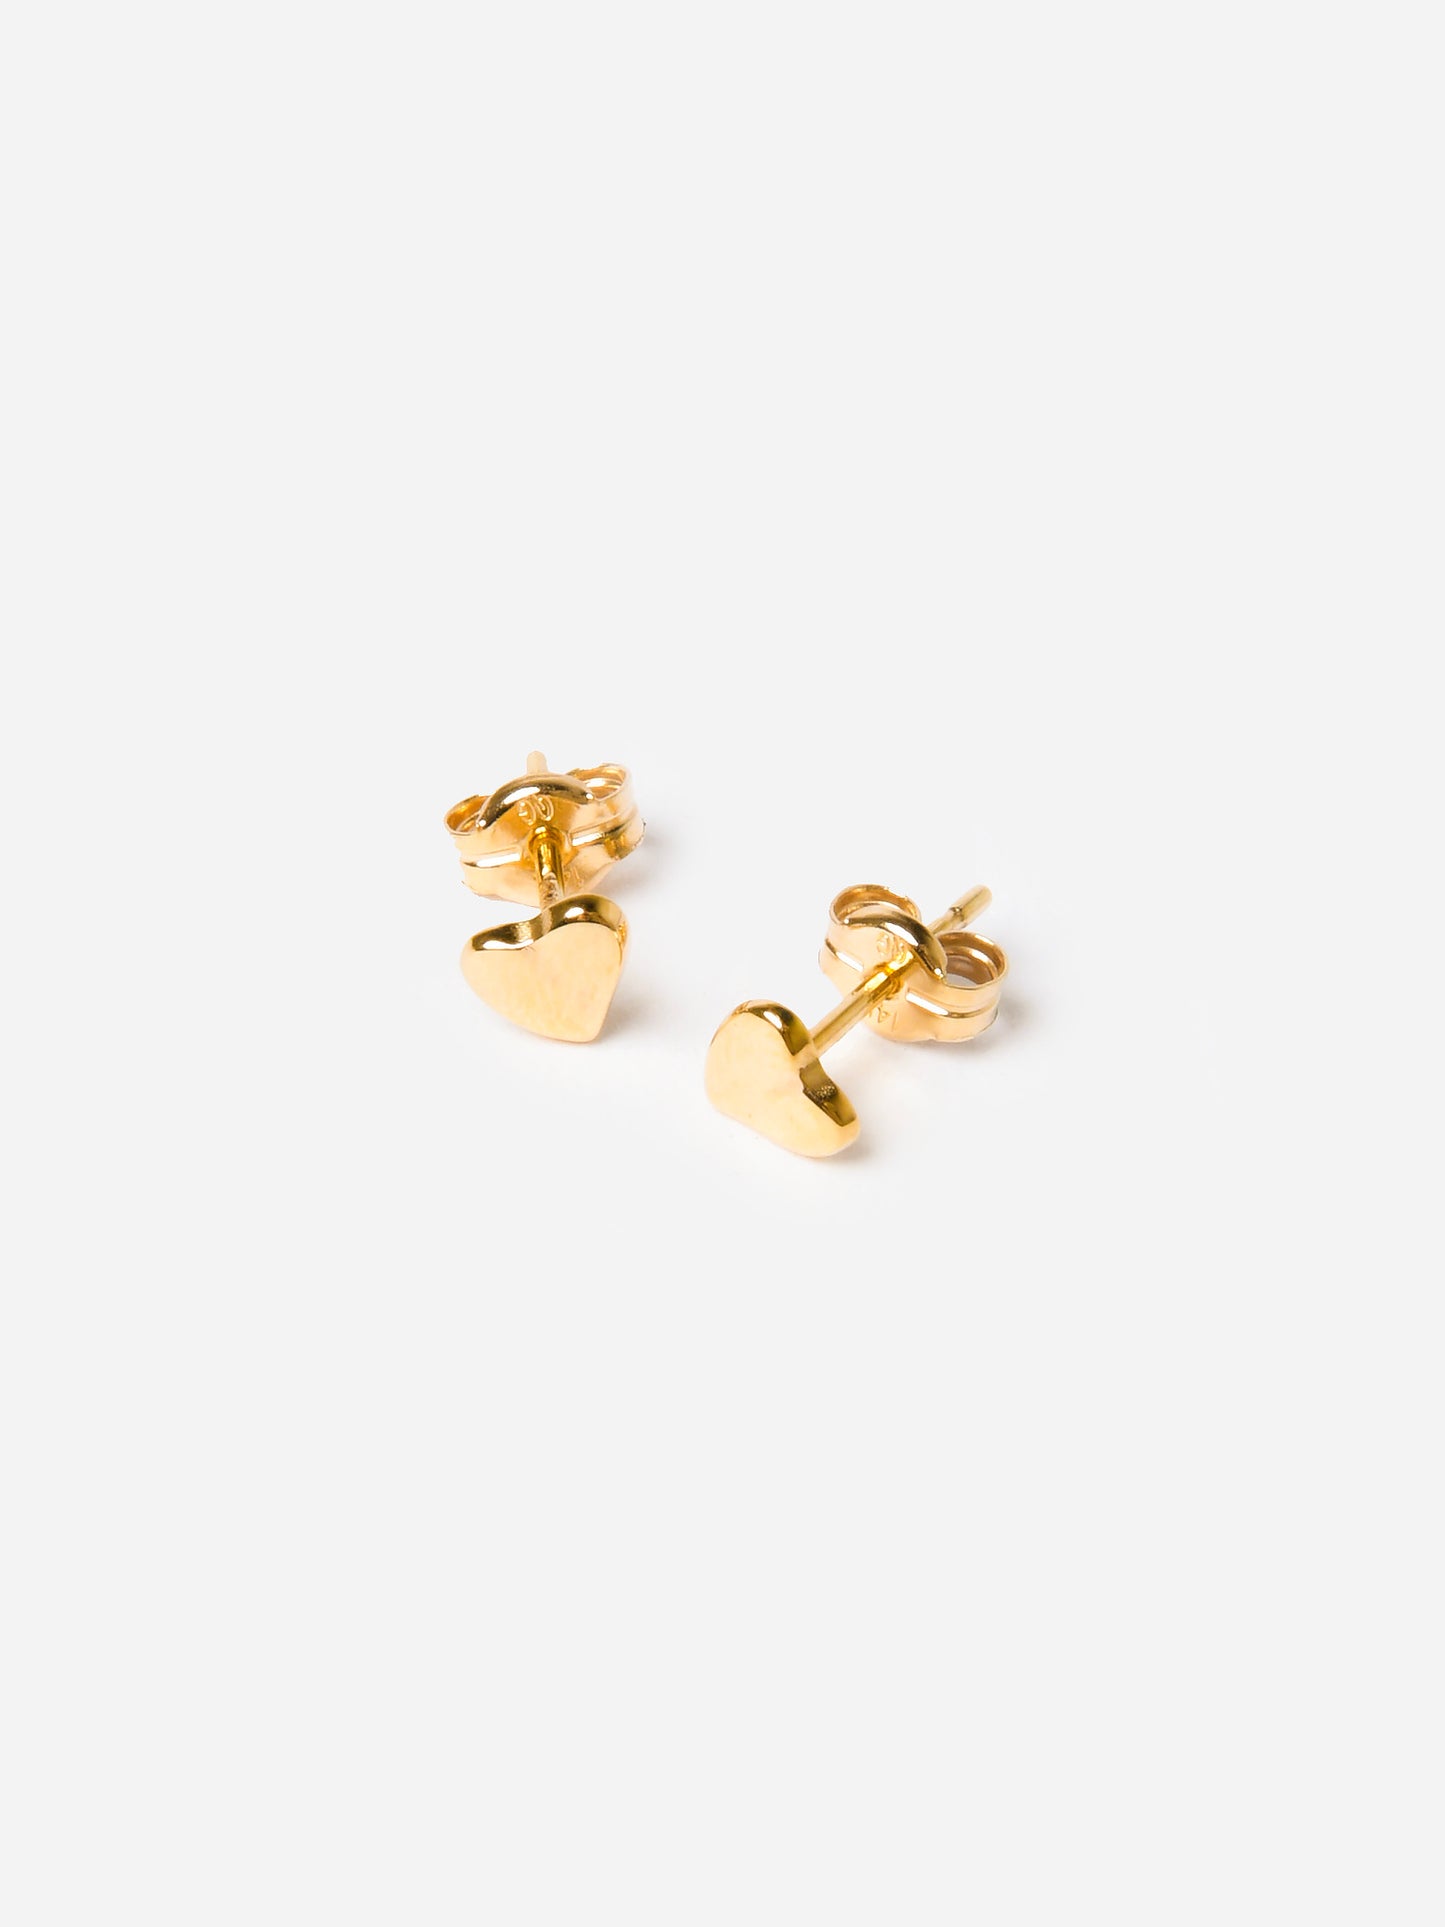 S. Bell Women's Asymmetrical Mini Heart Stud Earrings